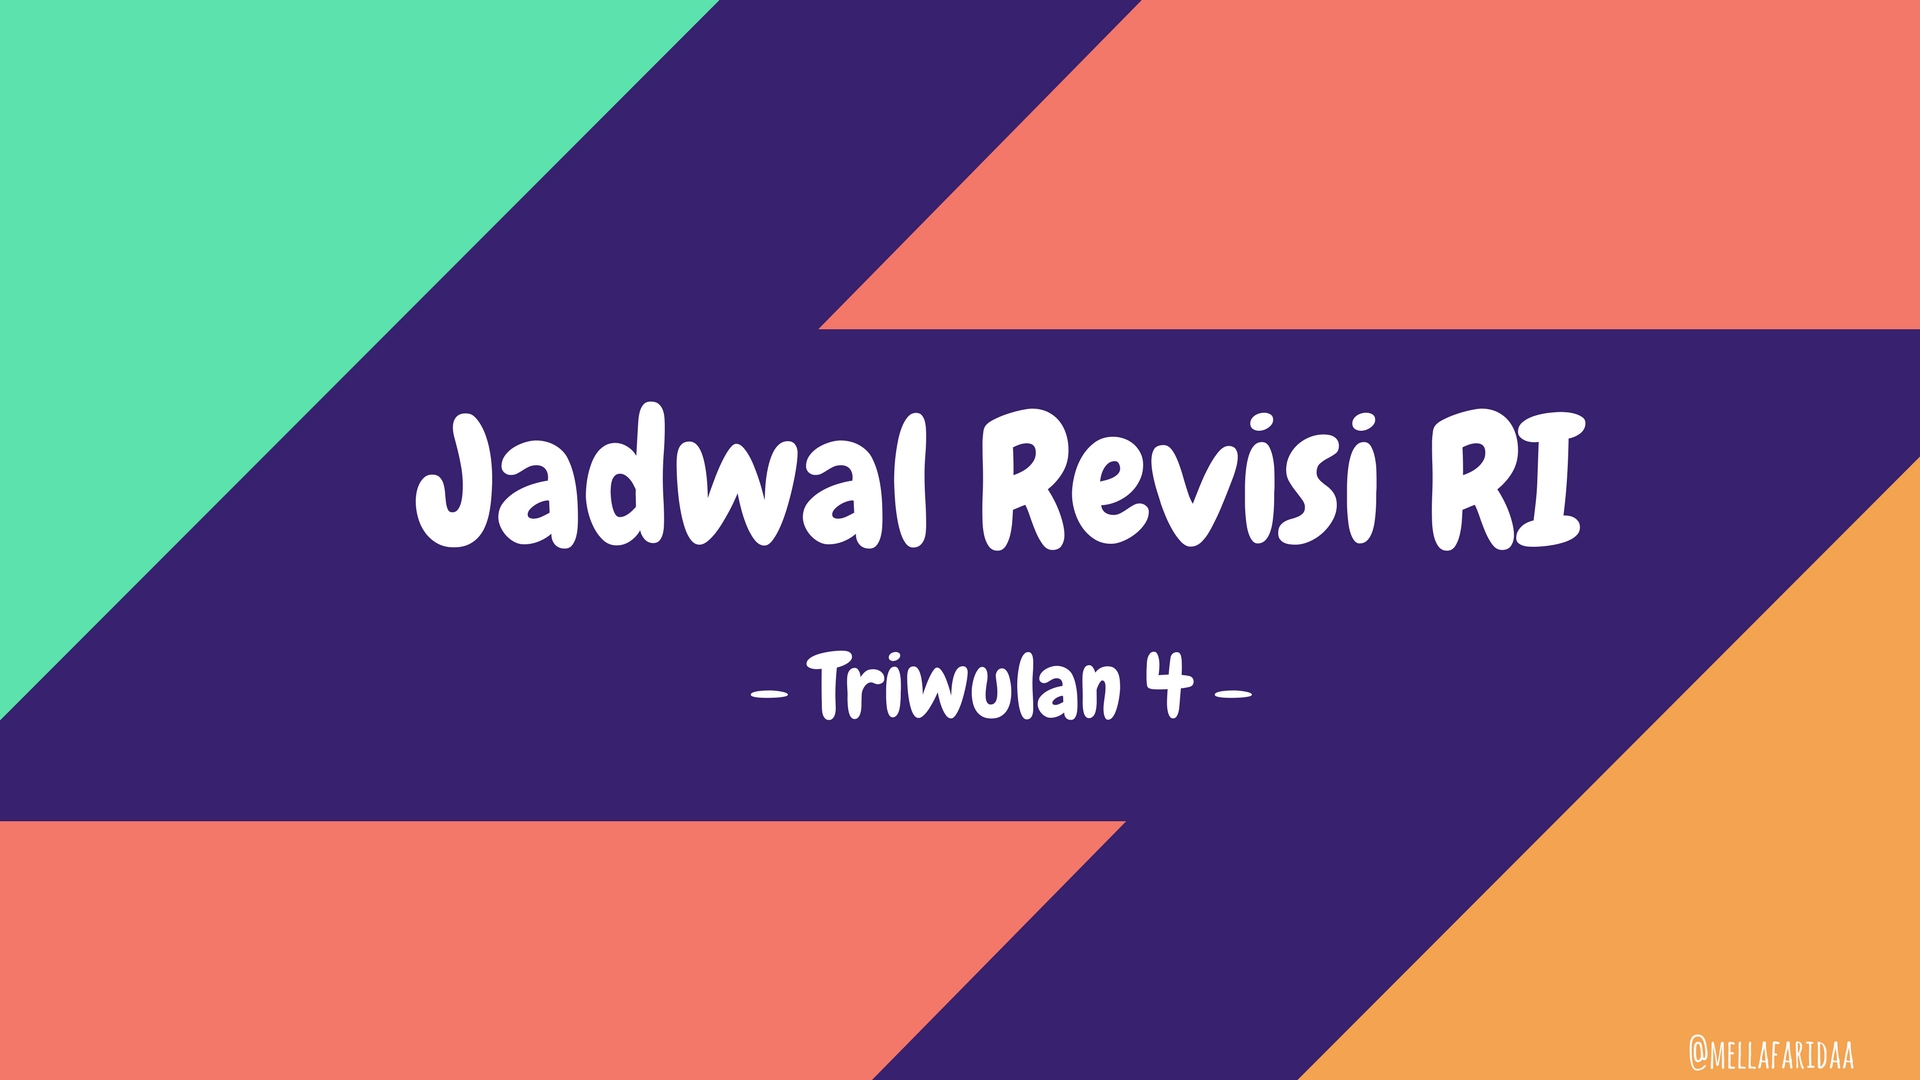 Revisi Jadual RI Triwulan 4-2015